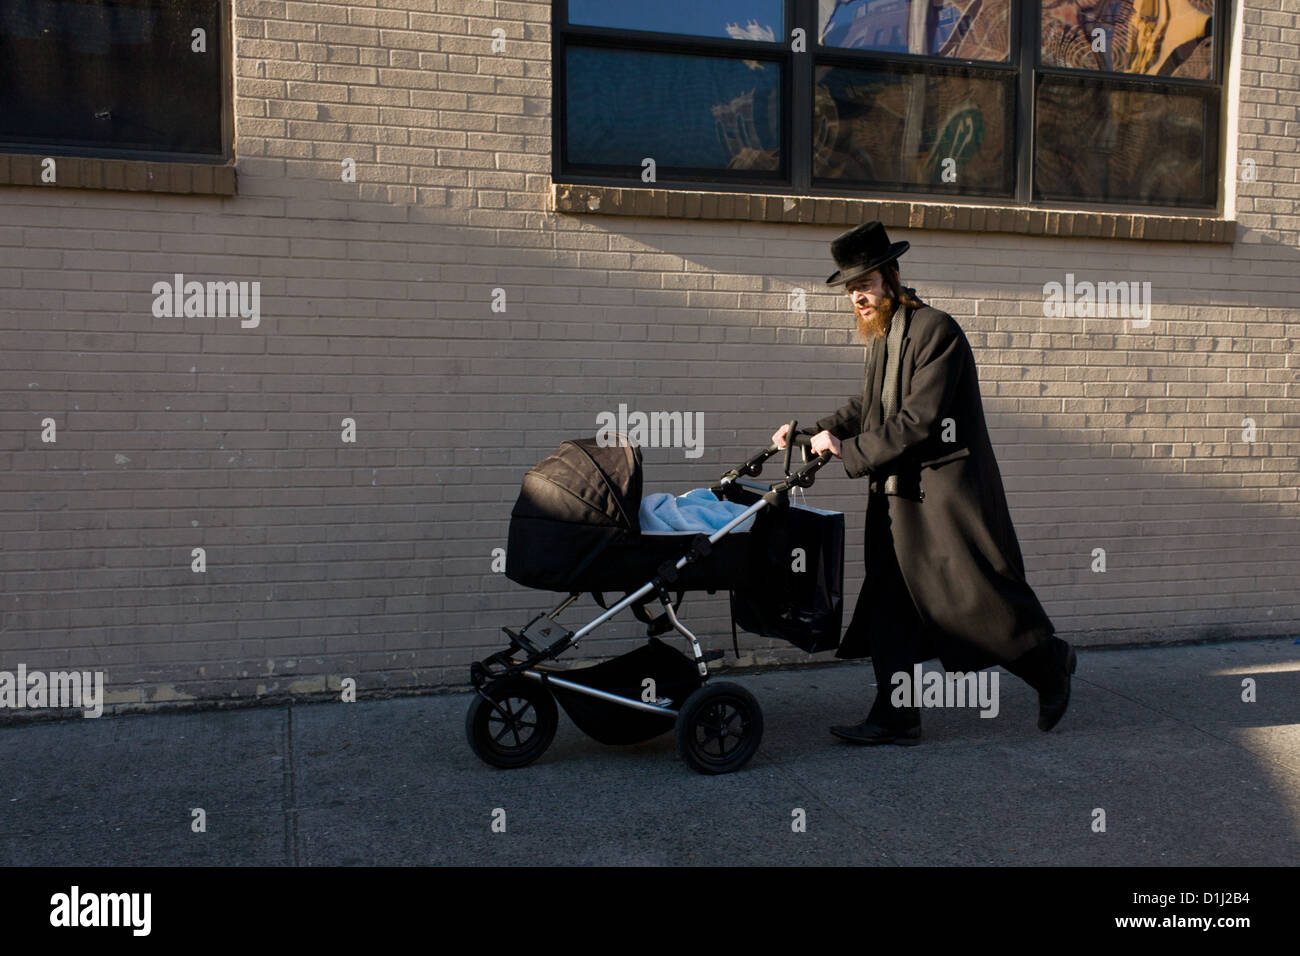 Orthodoxe jüdische Gemeinde in Borough Park, Brooklyn, New York Stockfoto